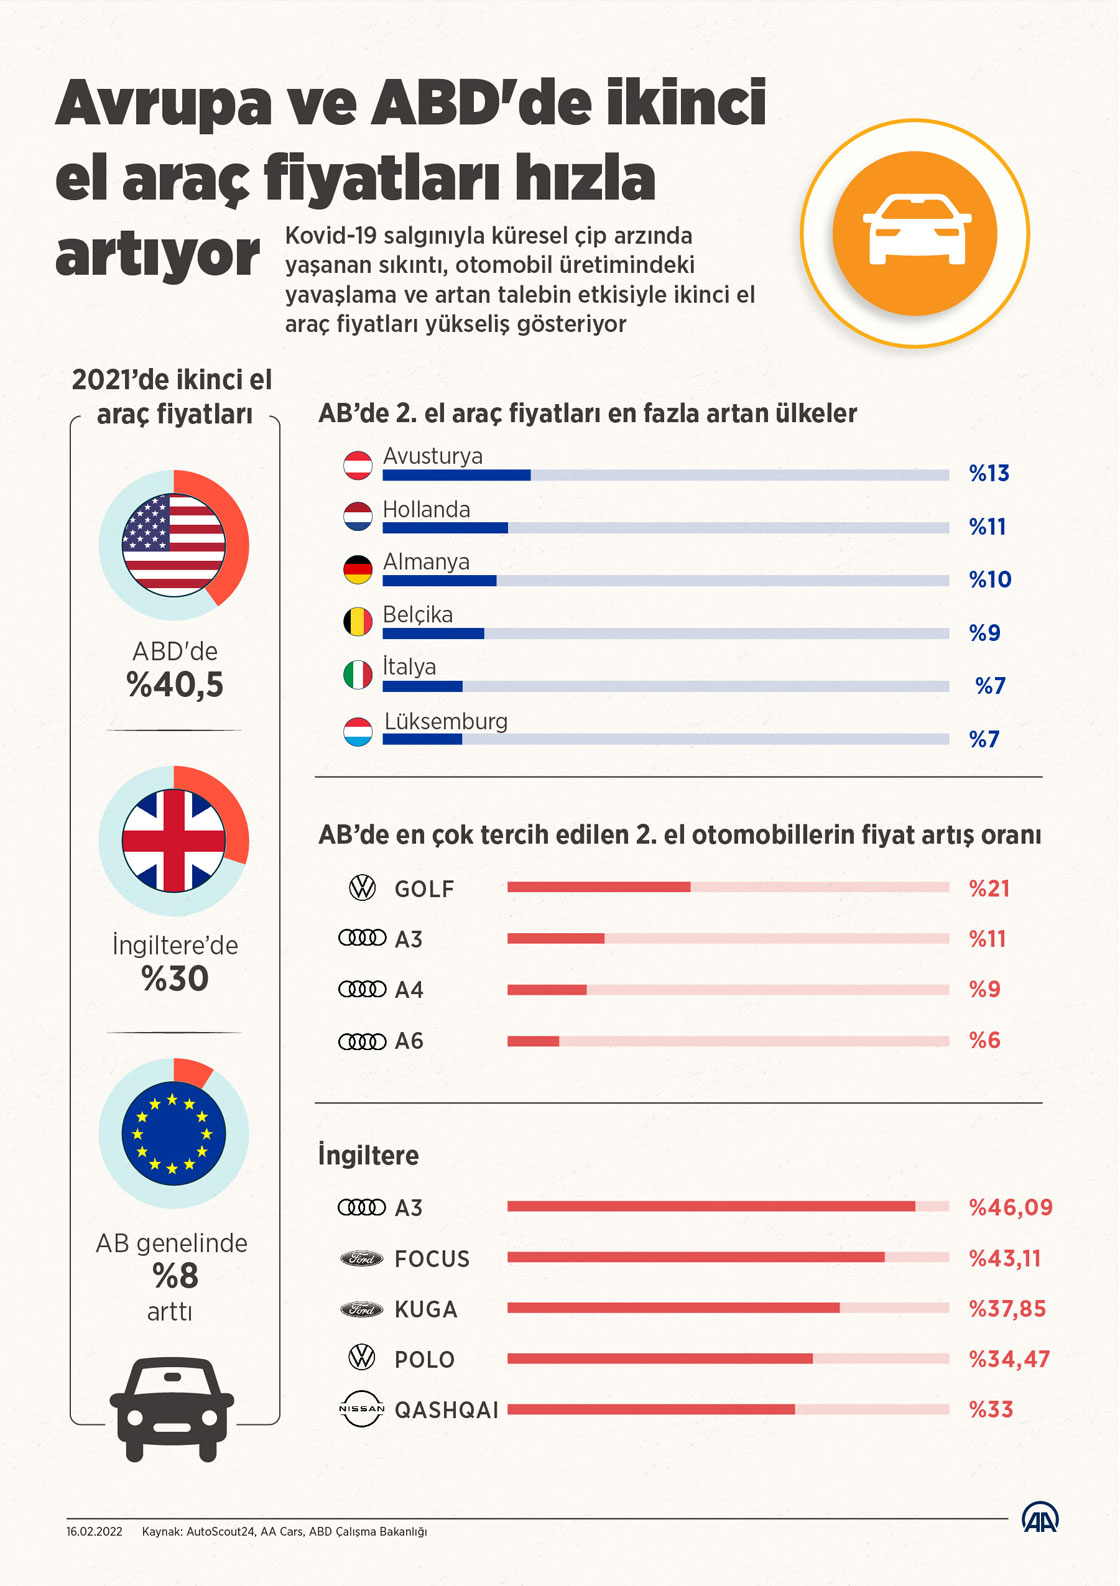 Avrupa ve ABD'de ikinci el araç fiyatları hızla artıyor